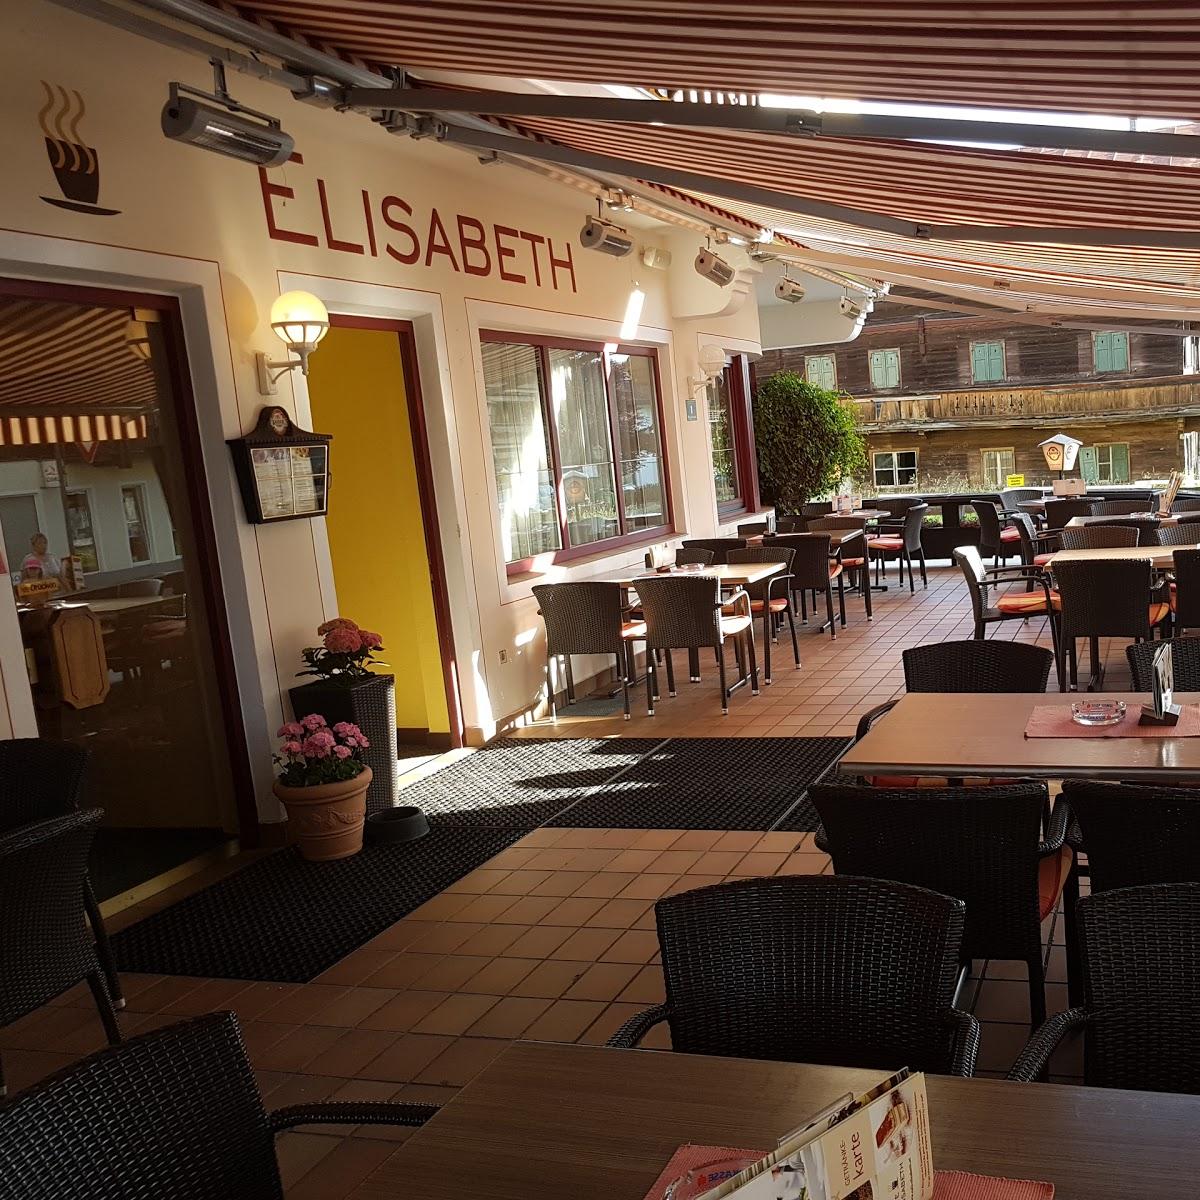 Restaurant "Café Pension Elisabeth" in Westendorf